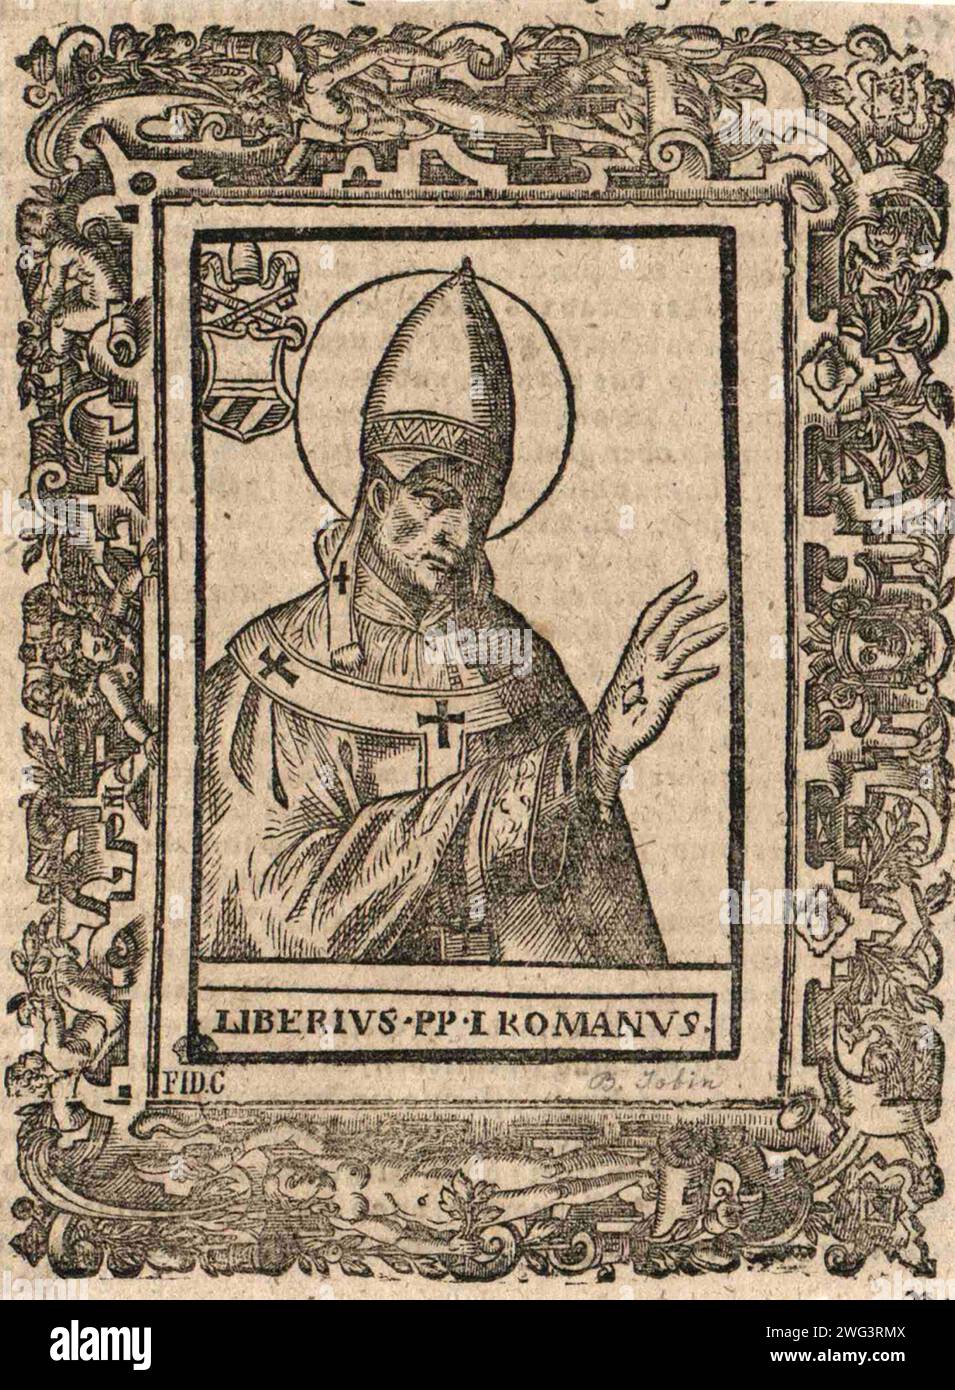 Gravure du 16e siècle du pape Liberius qui fut pontife de AD352 à AD366. Il était le 36e pape. Il a été le premier pape qui n'a pas été canonisé par l'Église latine, bien qu'il soit considéré comme tel par l'Église orientale. Banque D'Images